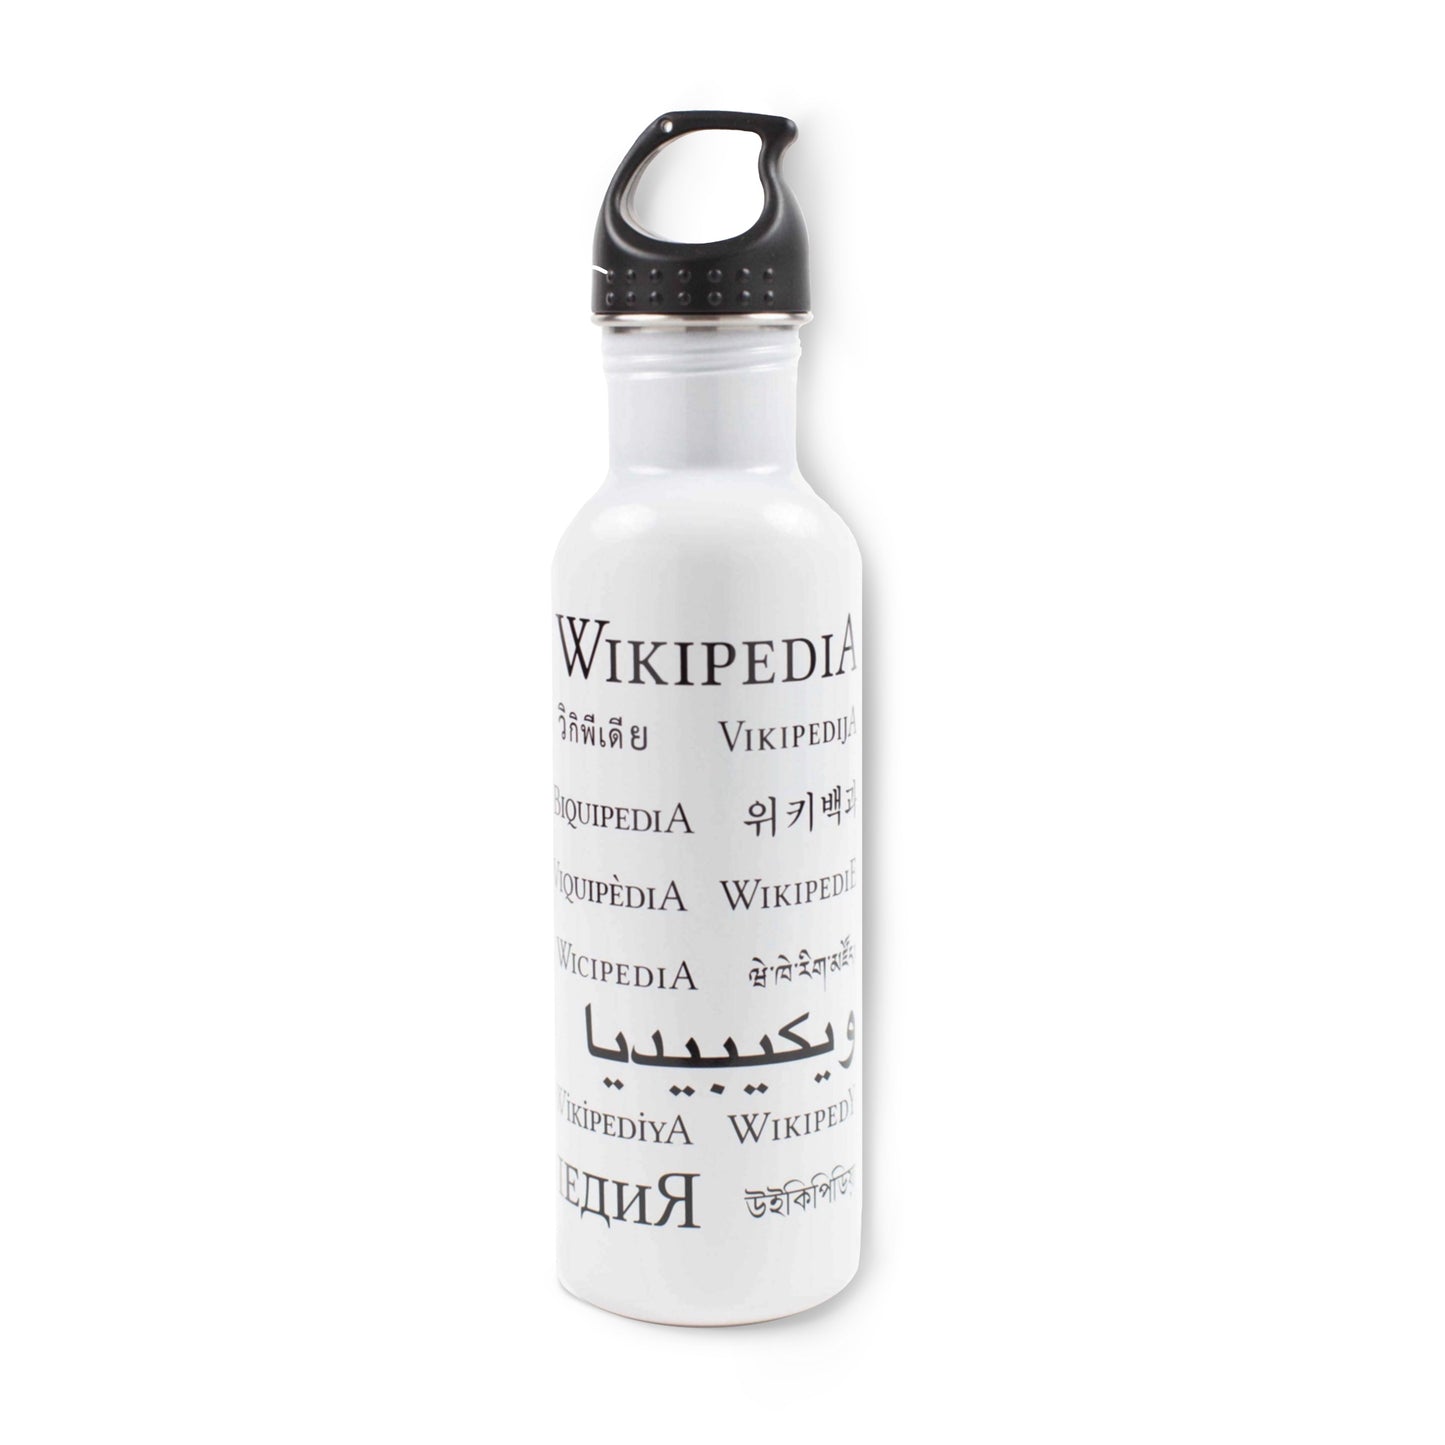 Botella de agua en idioma "Wikipedia"